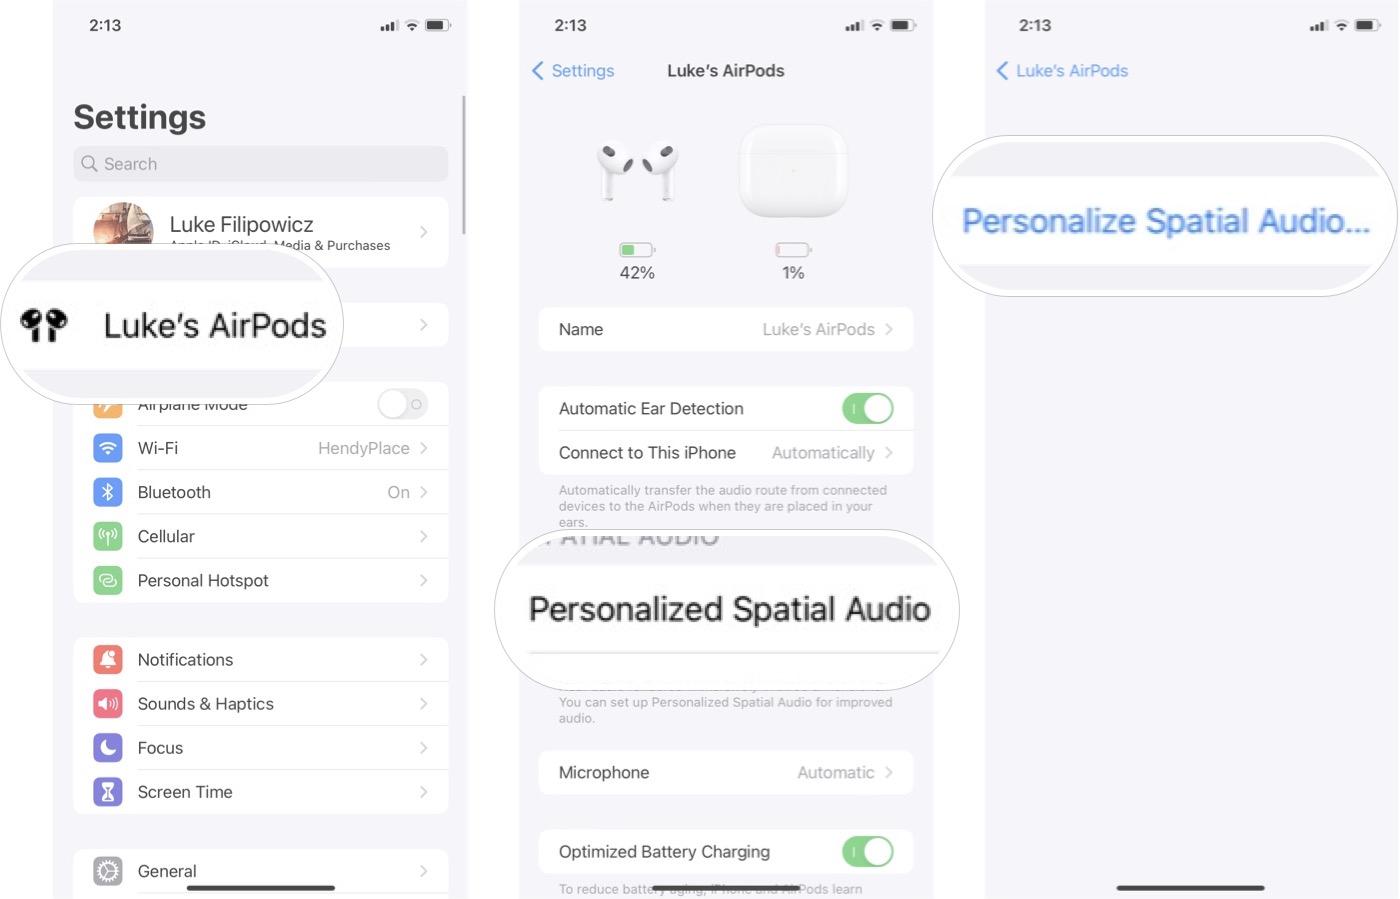 Cara mengatur Audio Spasial Khusus di iOS 16: Luncurkan Pengaturan, ketuk AirPods Anda, ketuk Audio Spasial Khusus, lalu ketuk Sesuaikan Audio Spasial.